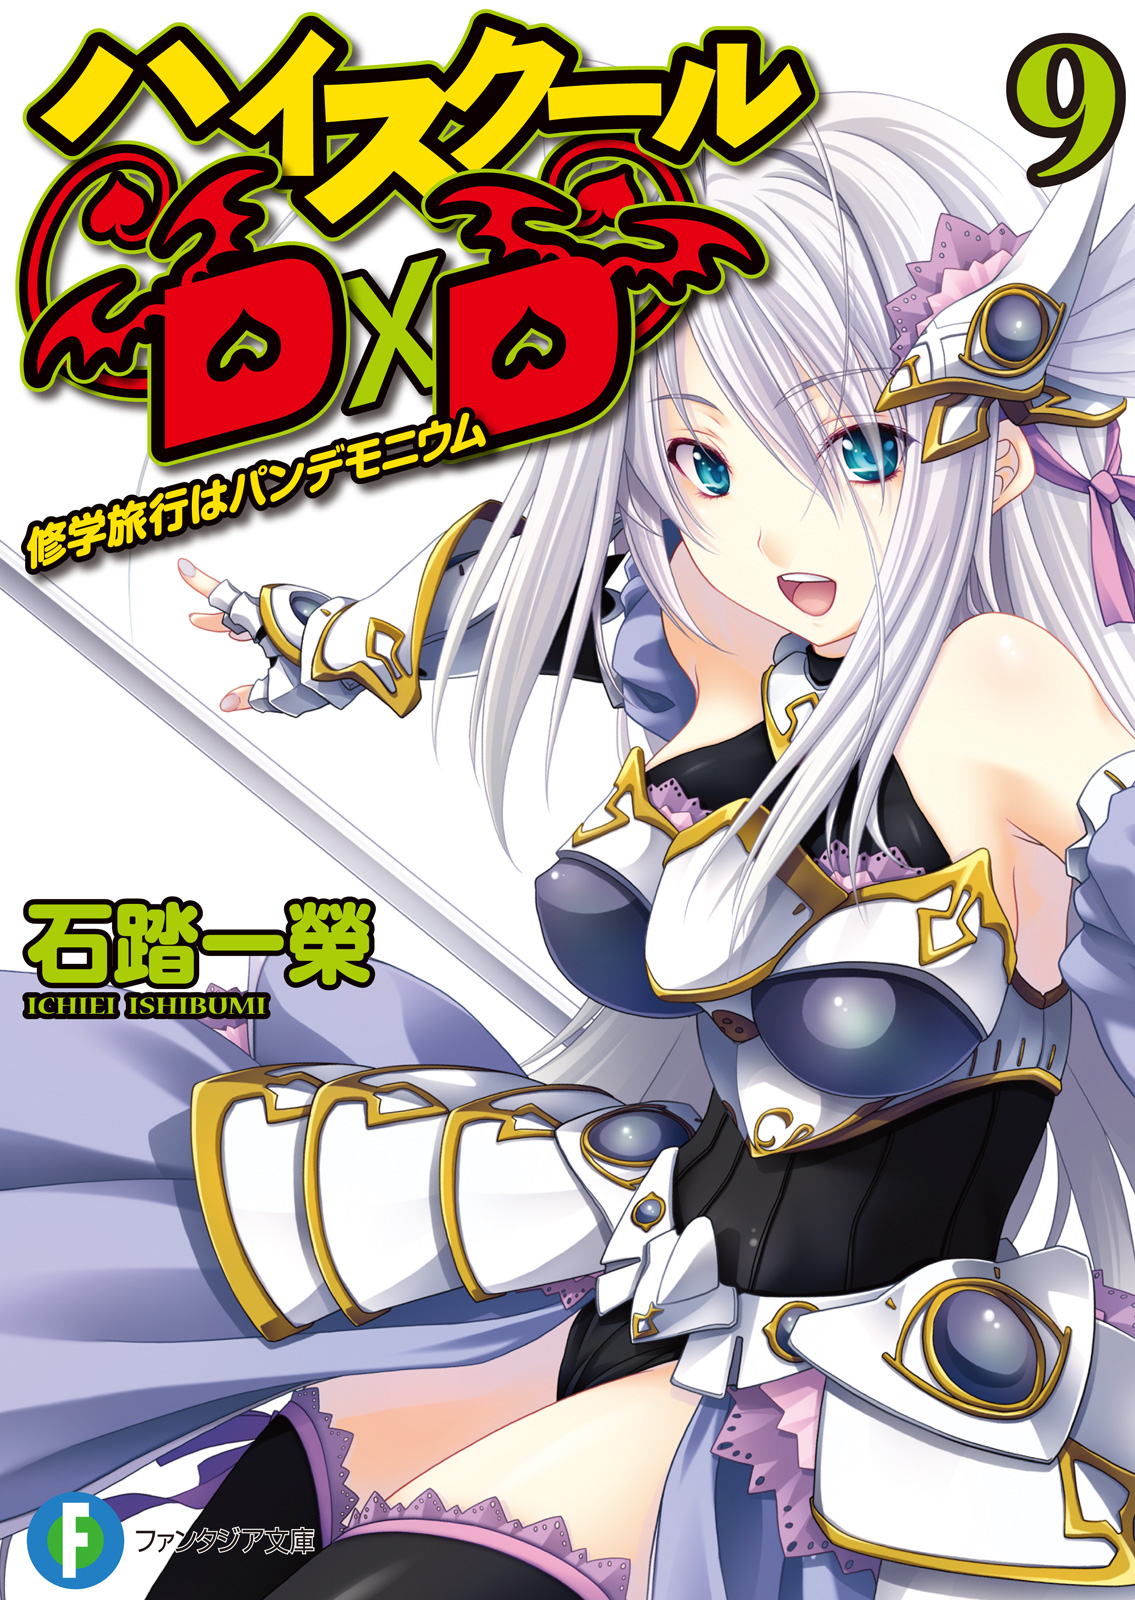 Light Novel Thursday: High School DxD Volume 06